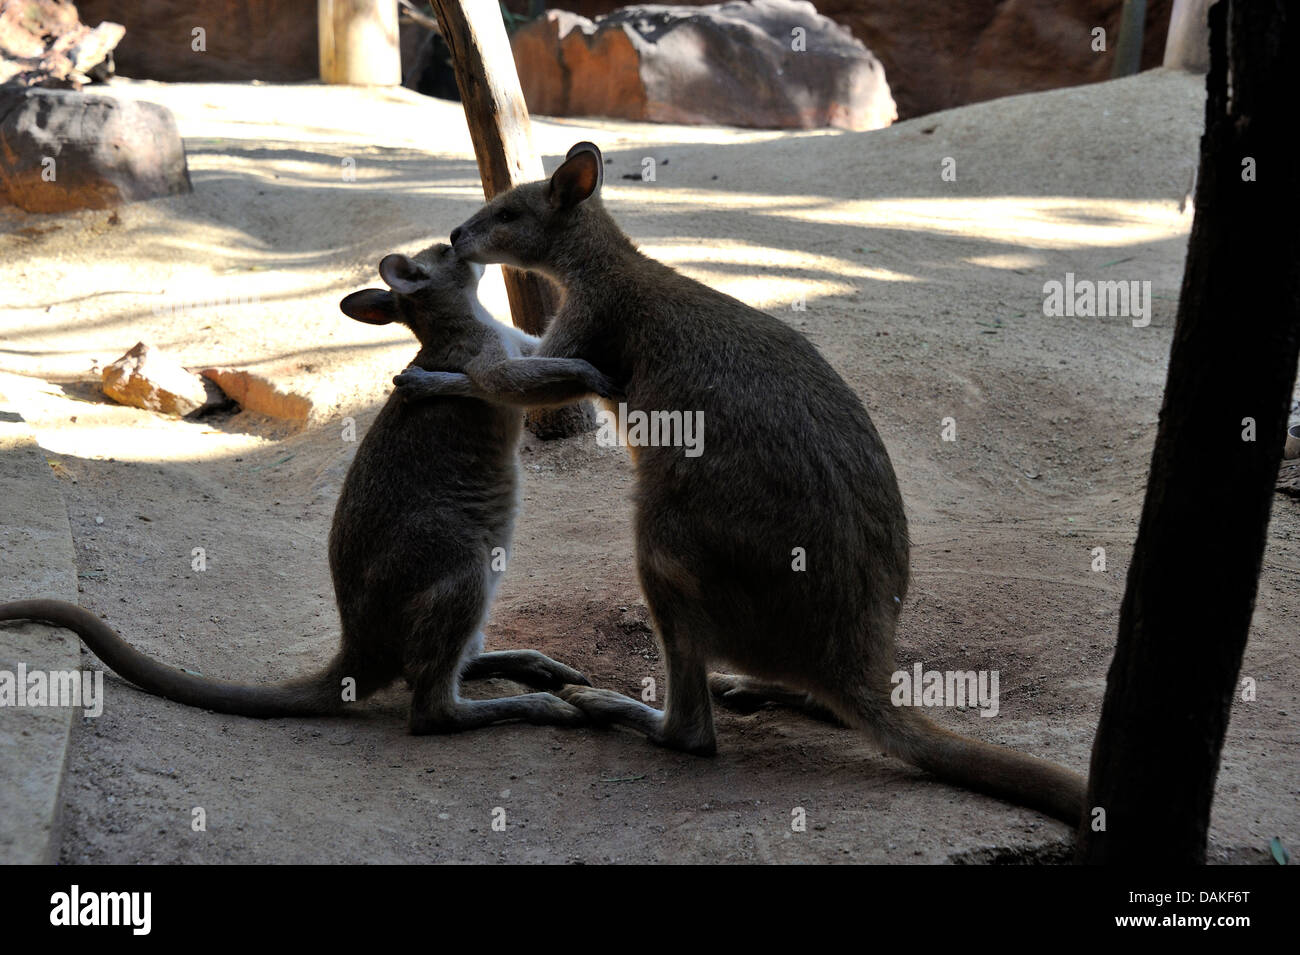 eastern gray kangaroo (Macropus giganteus), mother with young, Australia Stock Photo